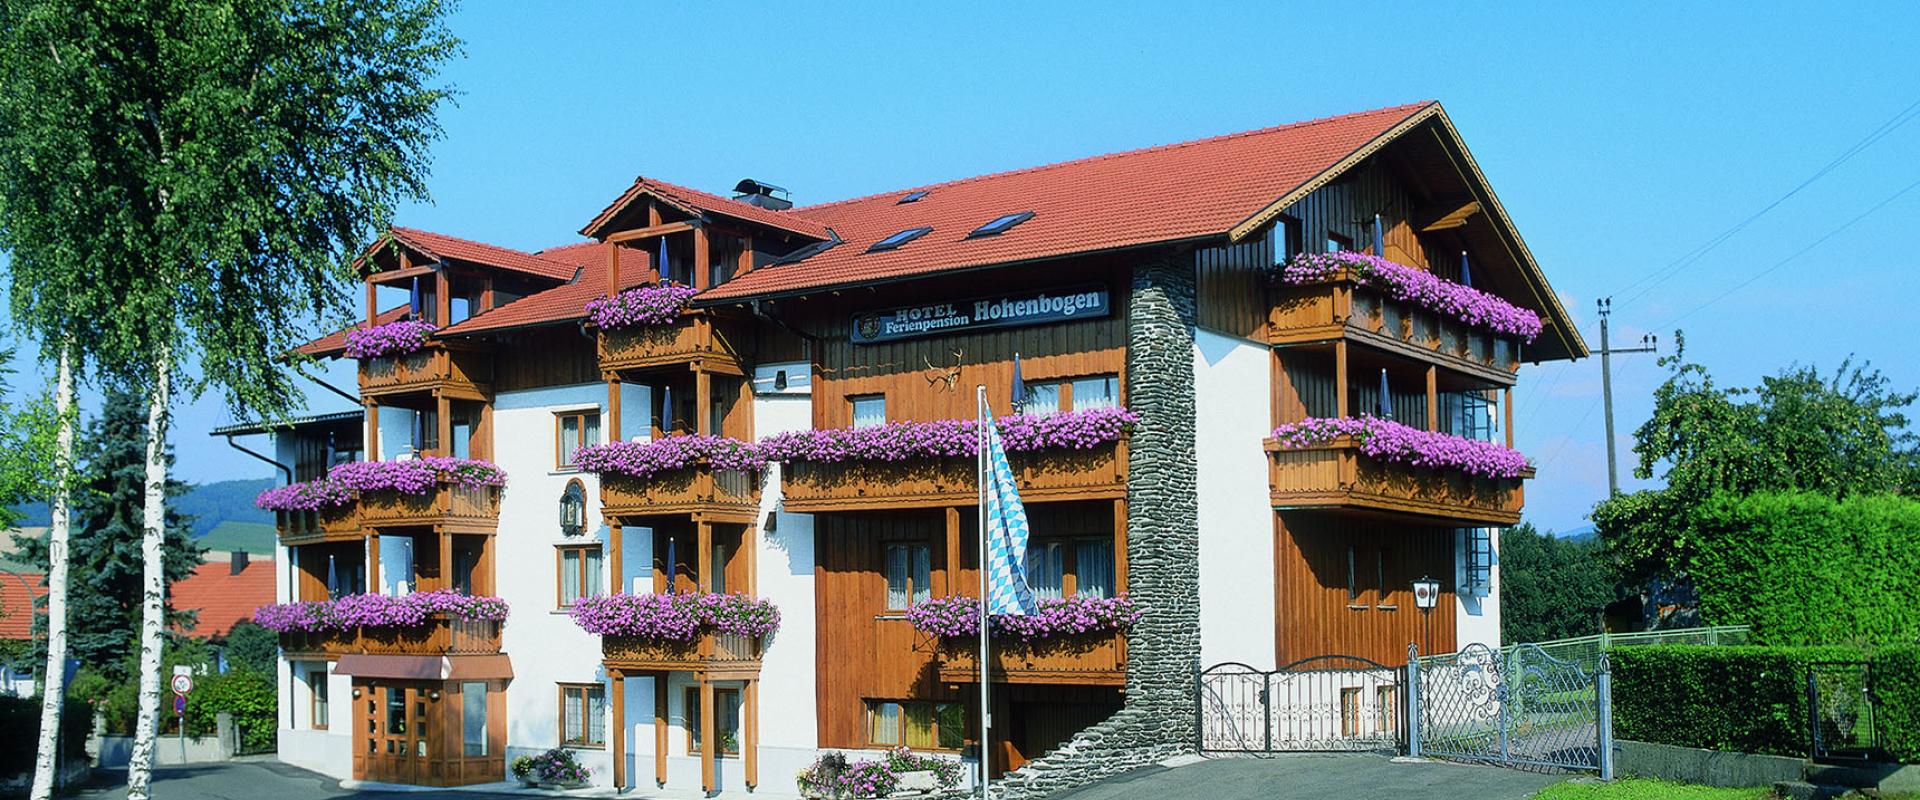 30819 BIke Hotel Hohnenbogen Bay.Wald Ansicht.jpeg